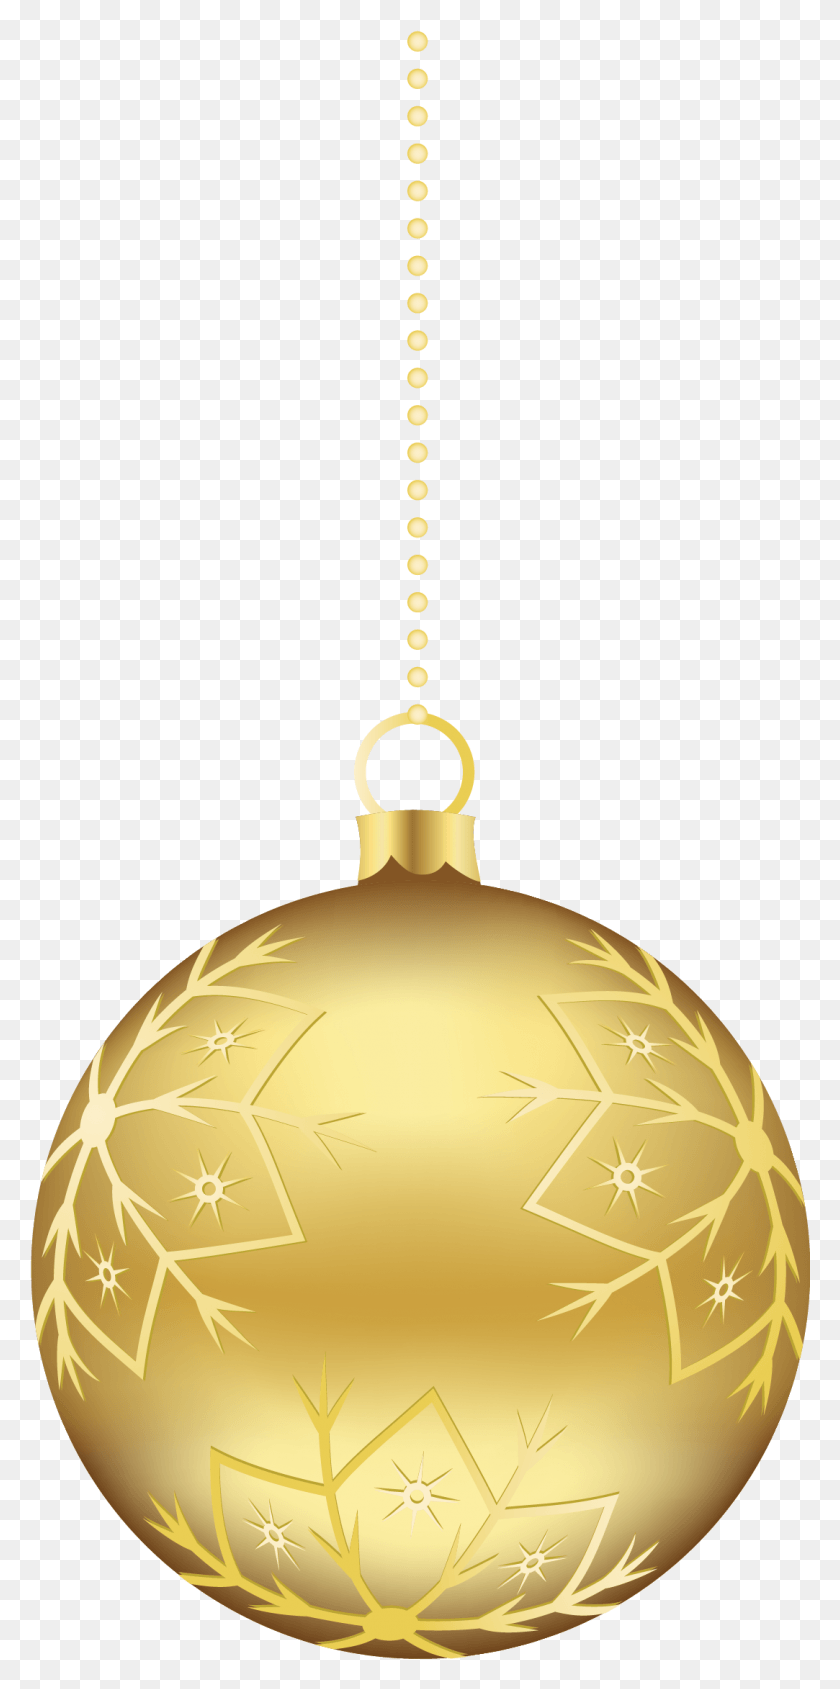 1083x2263 Adornos De Navidad De Oro Colgando Bolas De Navidad De Oro, Iluminación, Bronce Hd Png